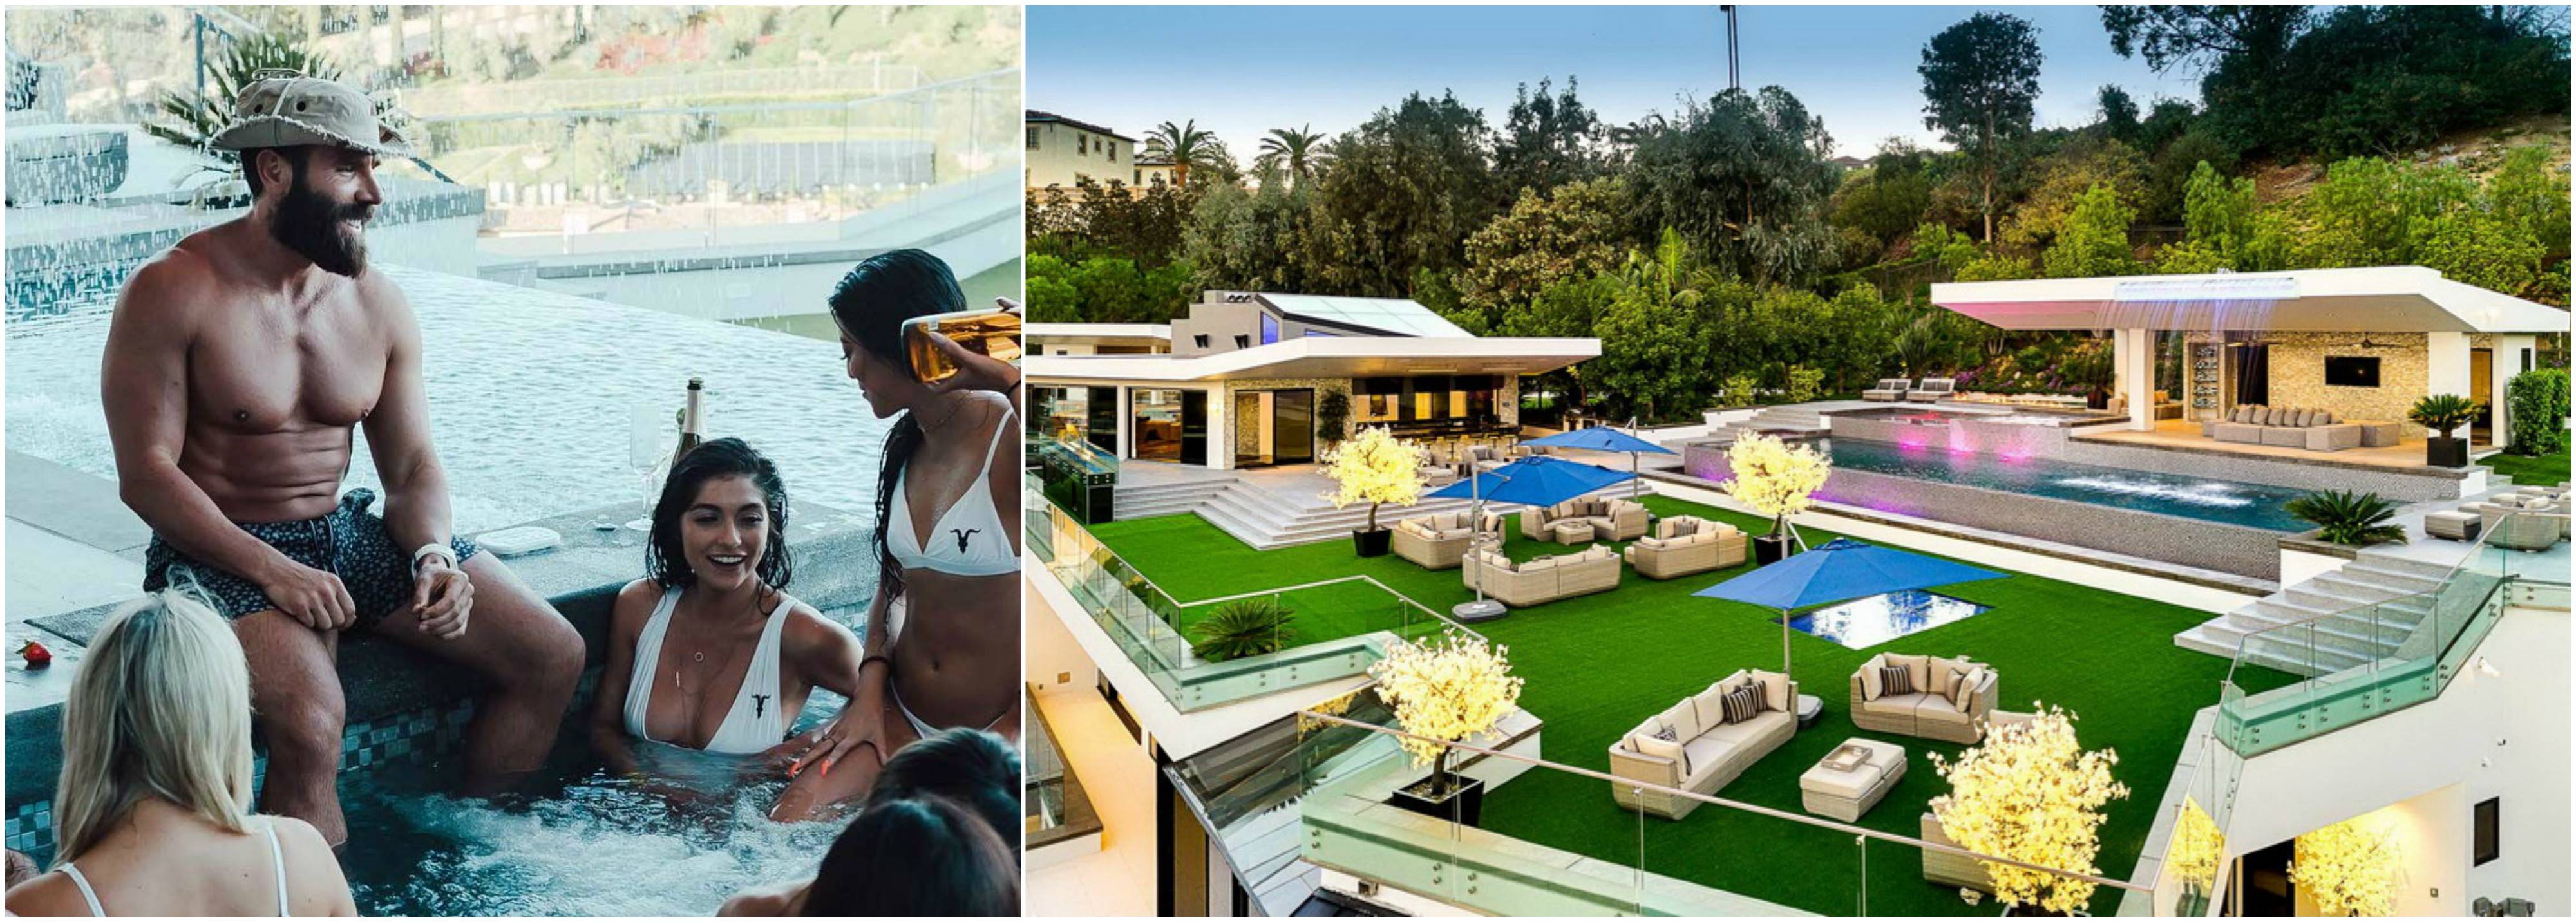 Dan Bilzerian mansion hot tub pool og lækre piger i Los Angeles